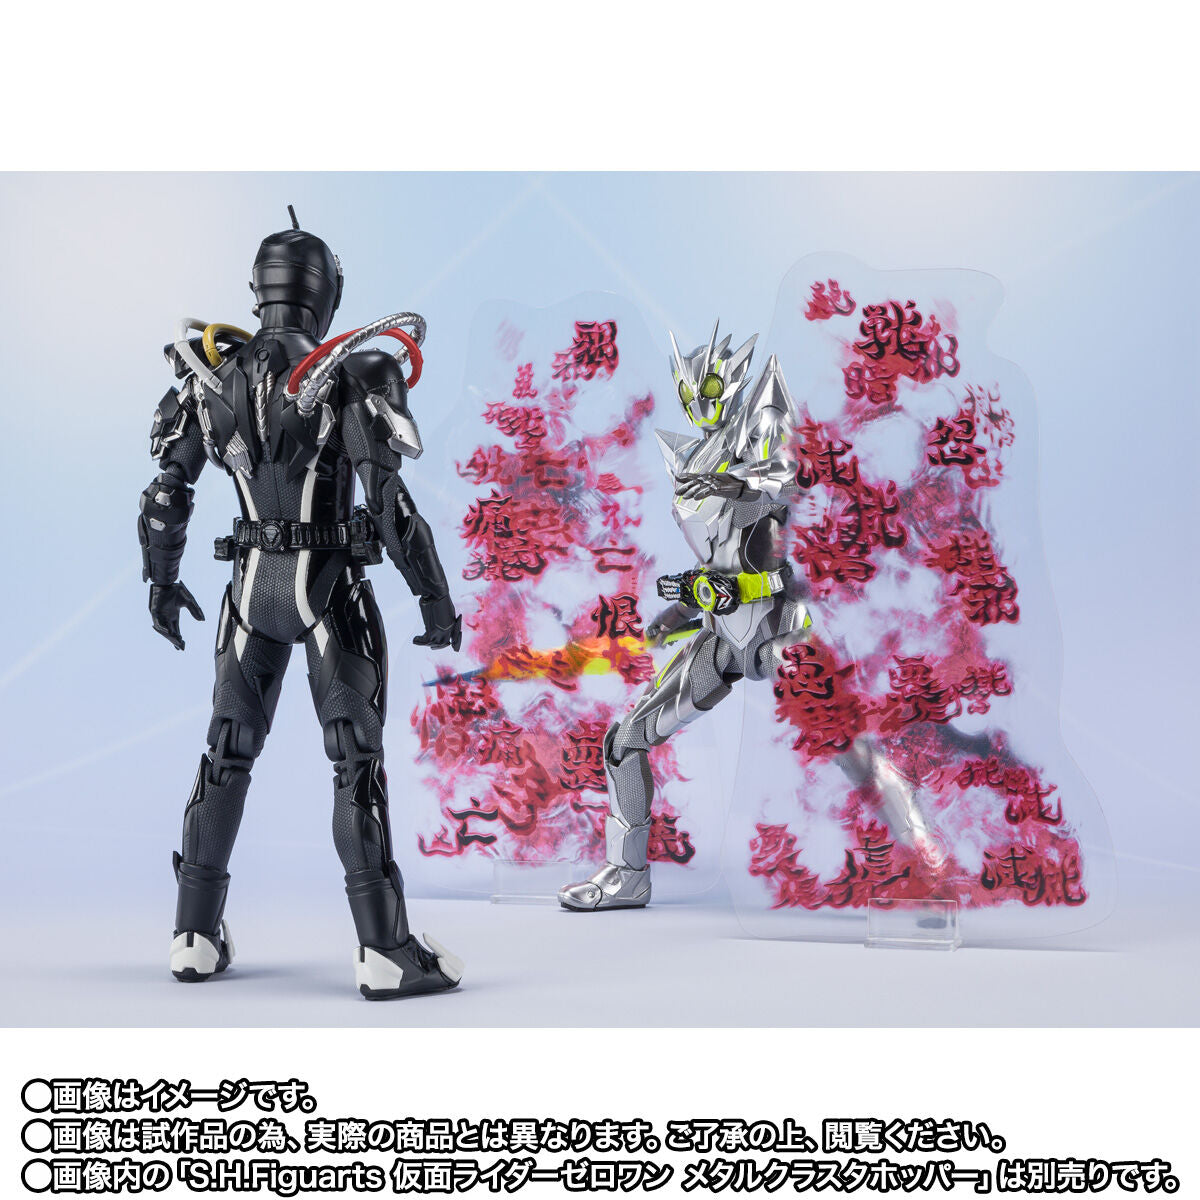 SH Figuarts Kamen Rider Ark Zero & Effects Set